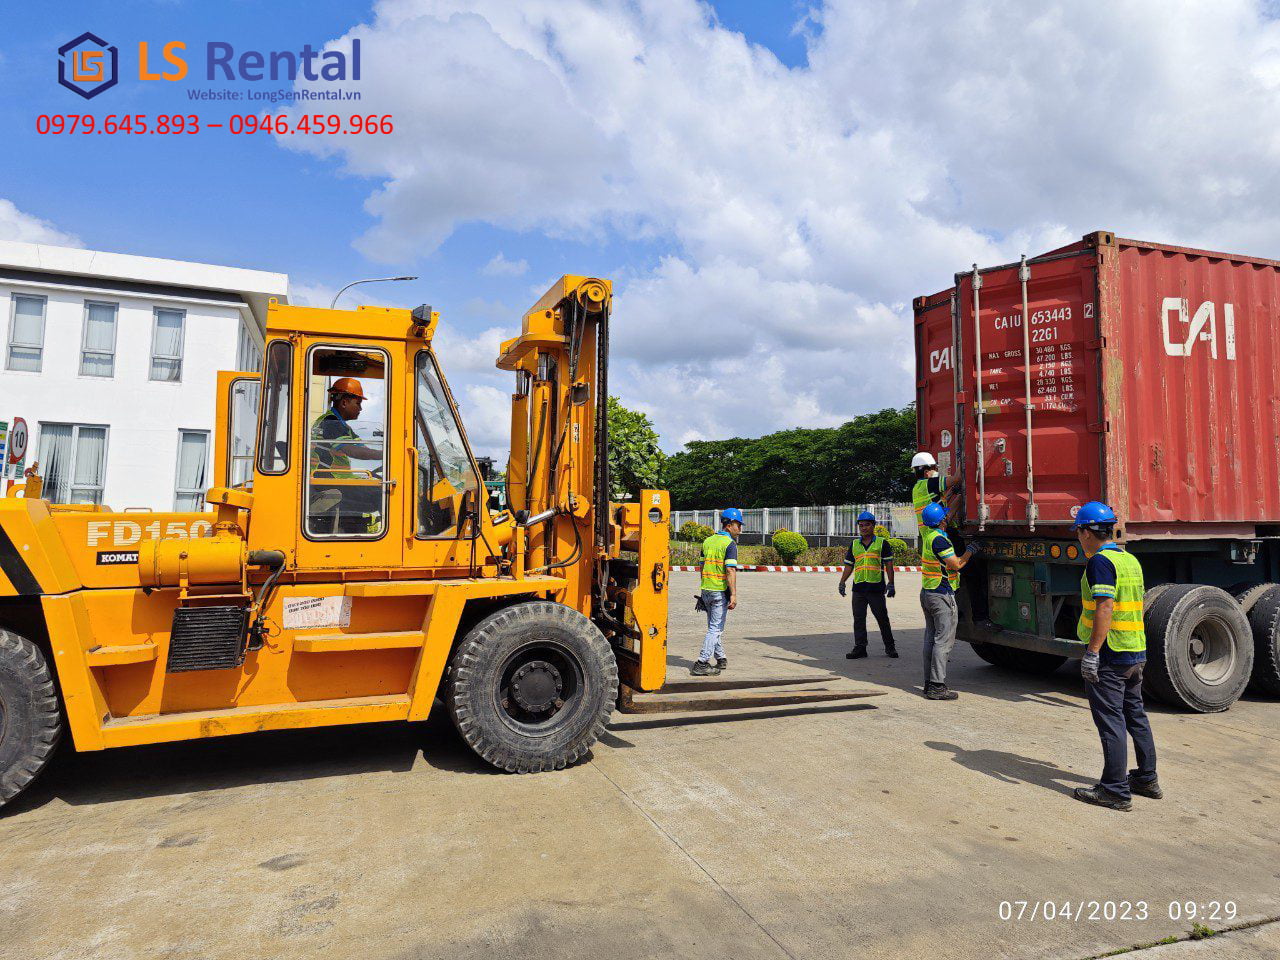 Cho thuê dịch vụ rút container tại TP Phan Rang Tháp Chàm - Long Sen Rental